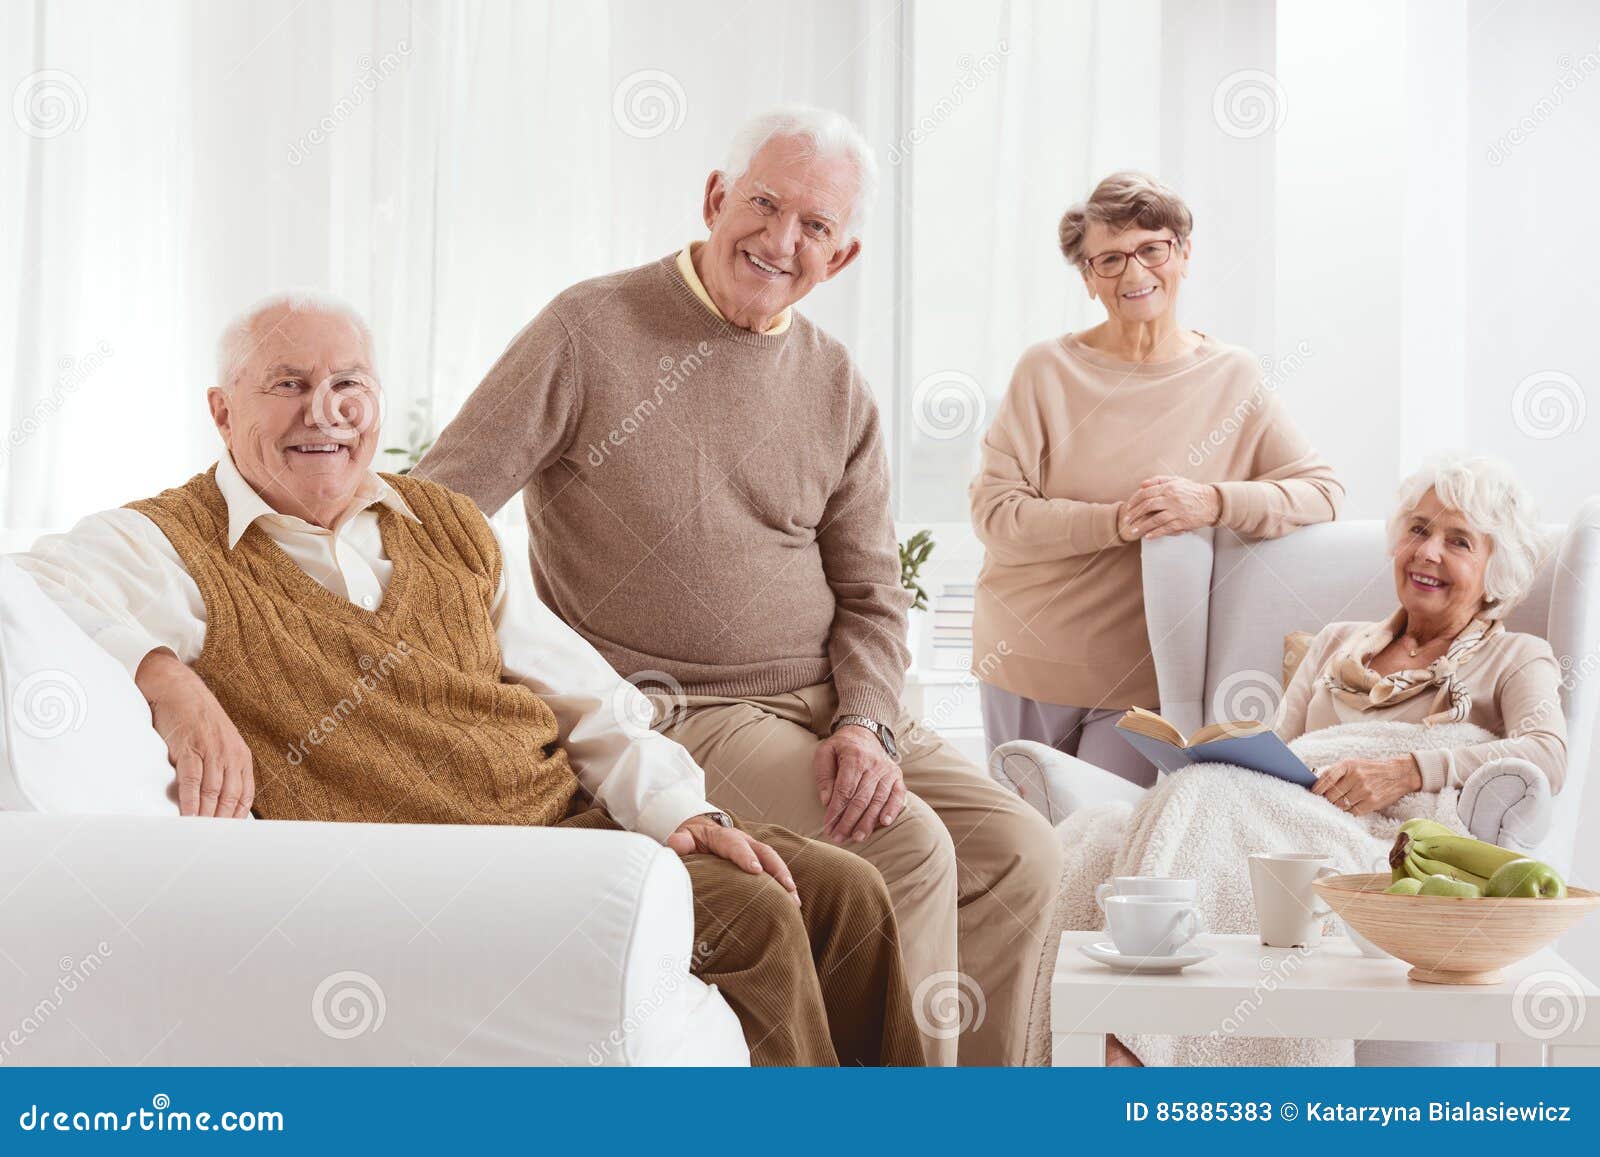 people in nursing home